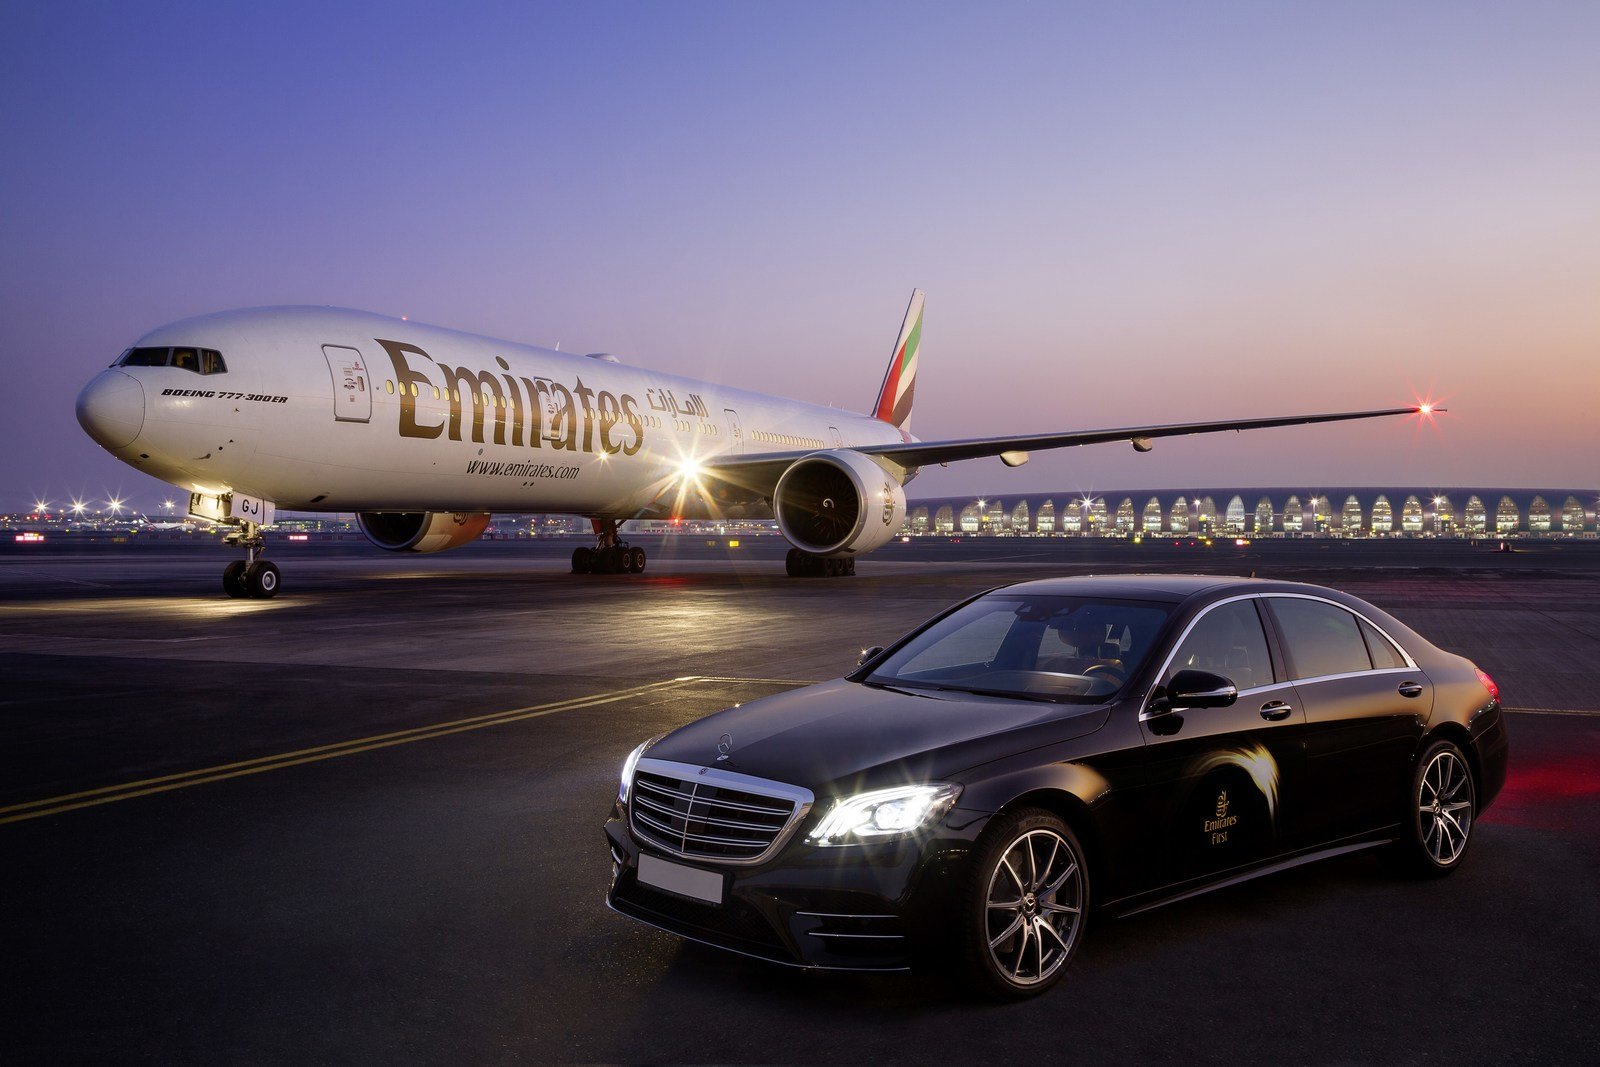 Nová první třída v letadlech Boeing 777 společnosti Emirates se inspirovala luxusním interiérem vozu Mercedes-Benz S-Class